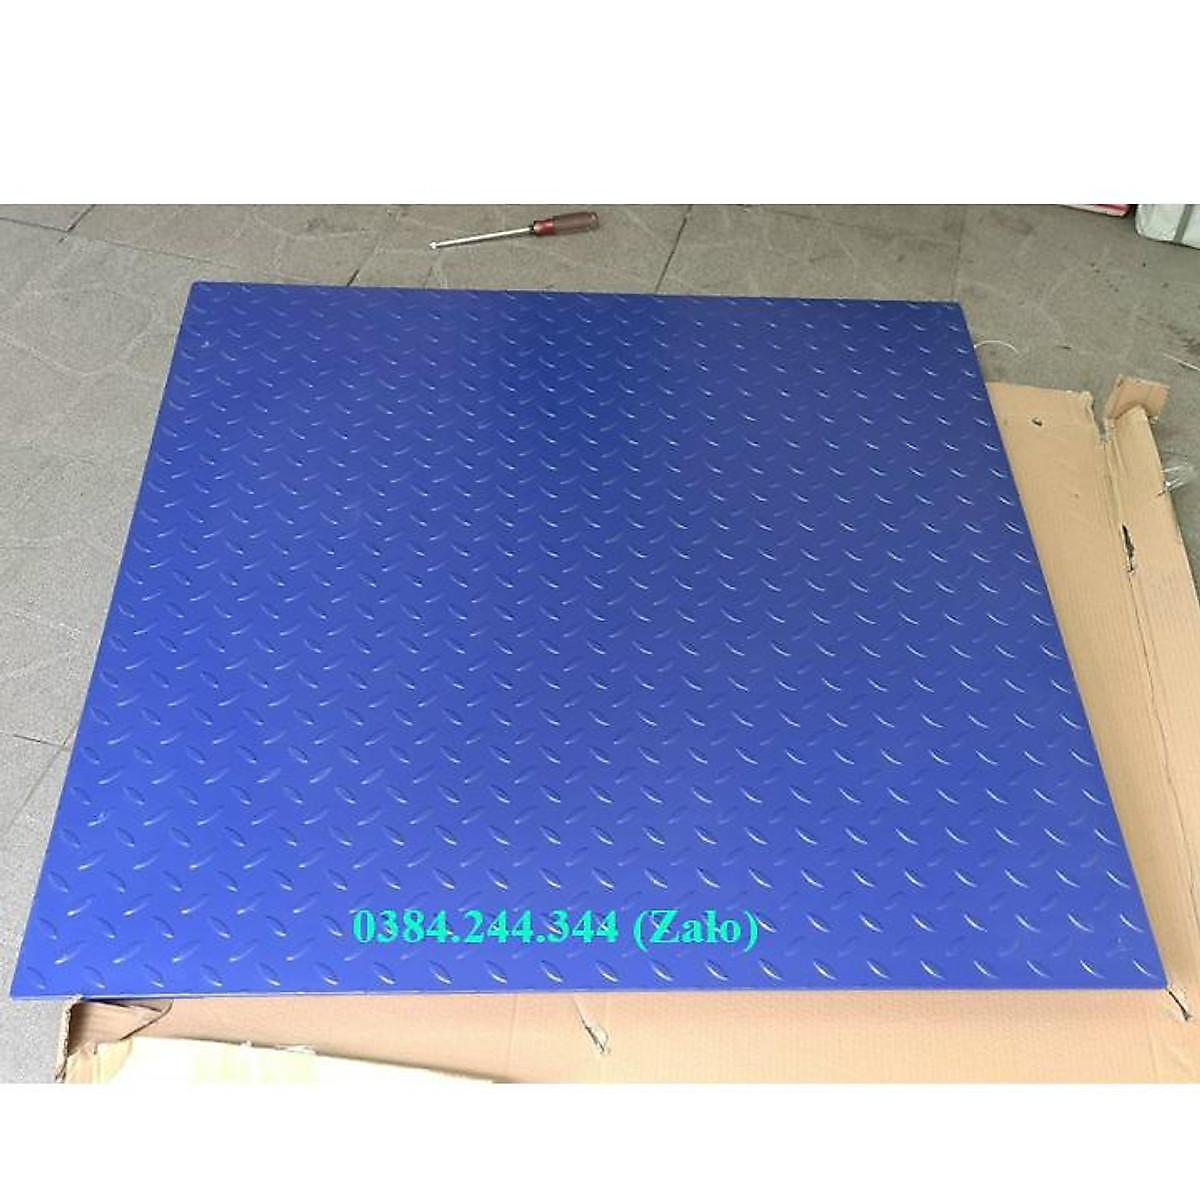 Cân sàn điện tử thông dụng Yaohua A12E, Mức cân 1 tấn, độ chia 0.5kg, Sàn cân kích thước 1.5m x 1.5m (rộng x sâu)